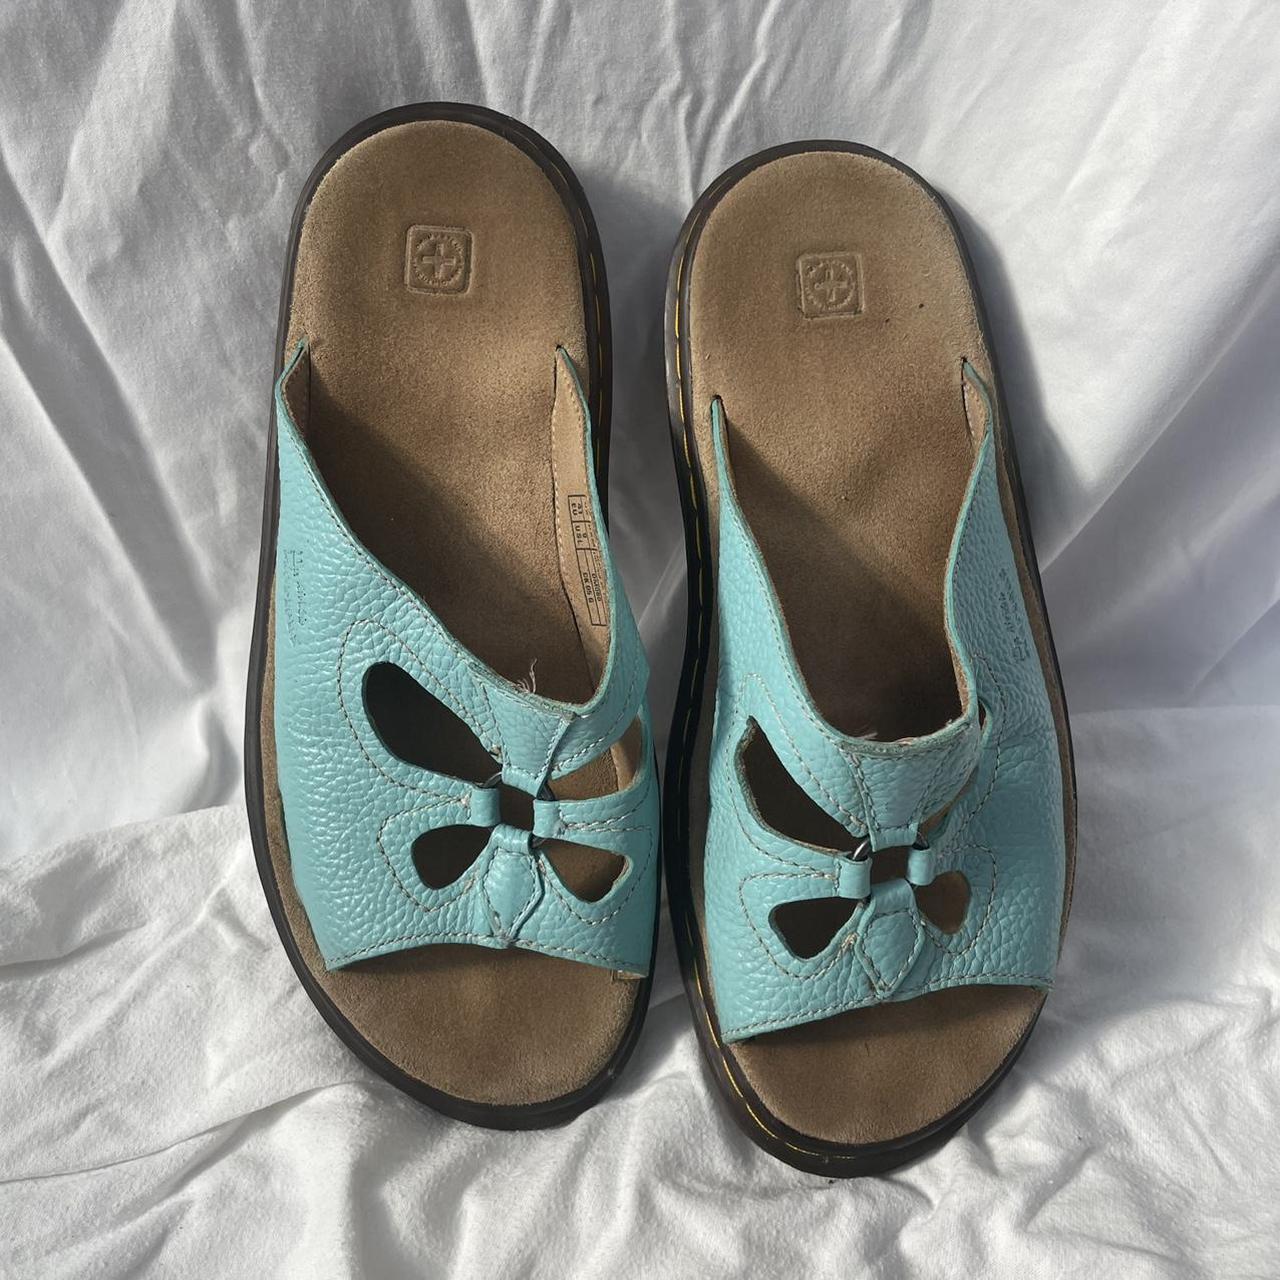 Butterfly 3a81 dr marten sandals in rare aqua blue... - Depop